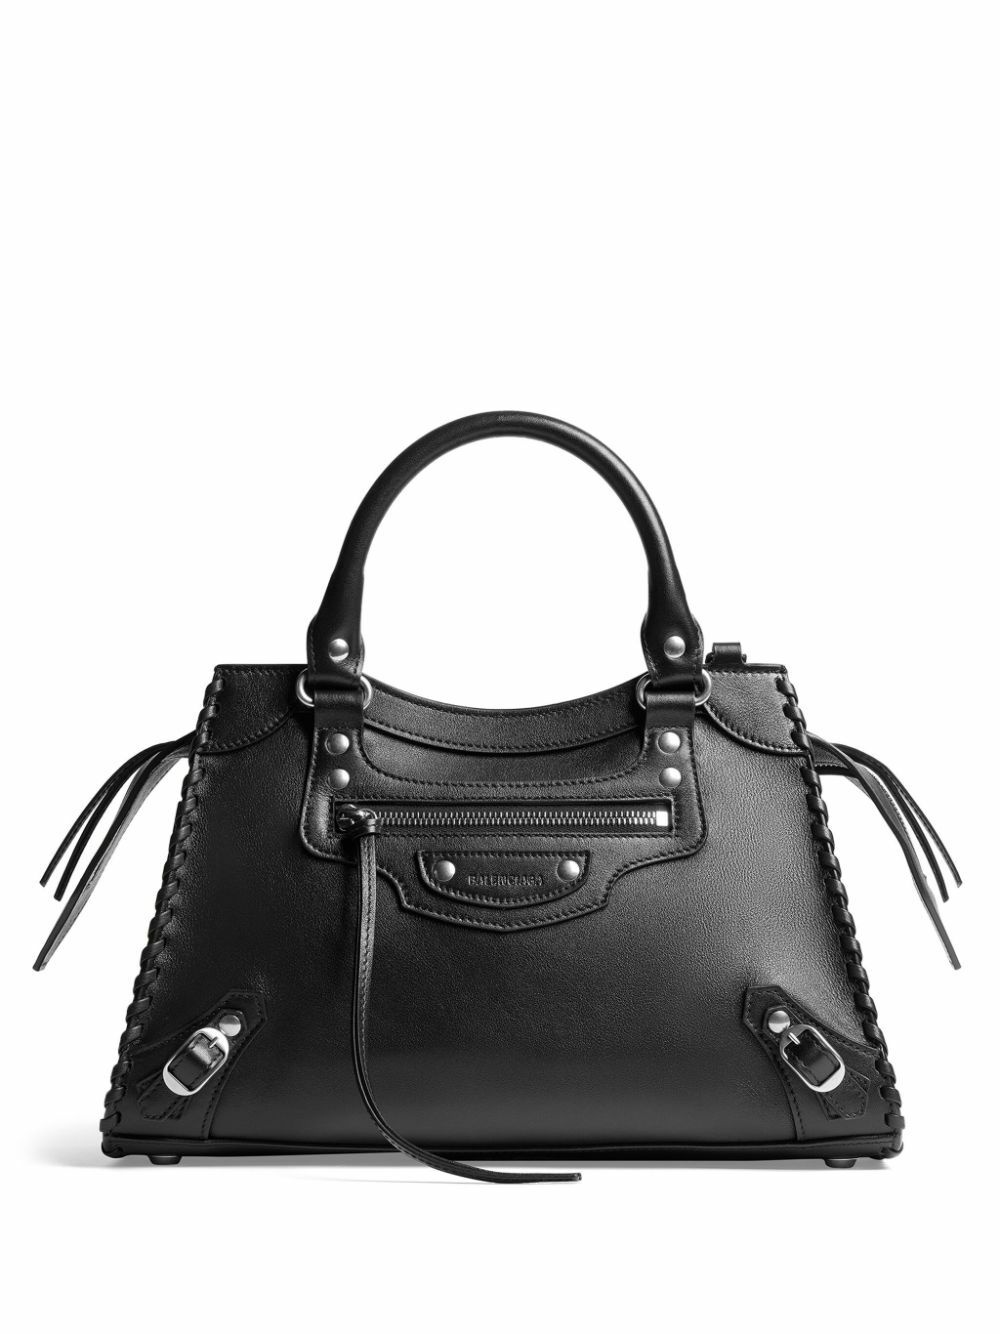 BALENCIAGA - Neo Classic City Small Leather Handbag Balenciaga